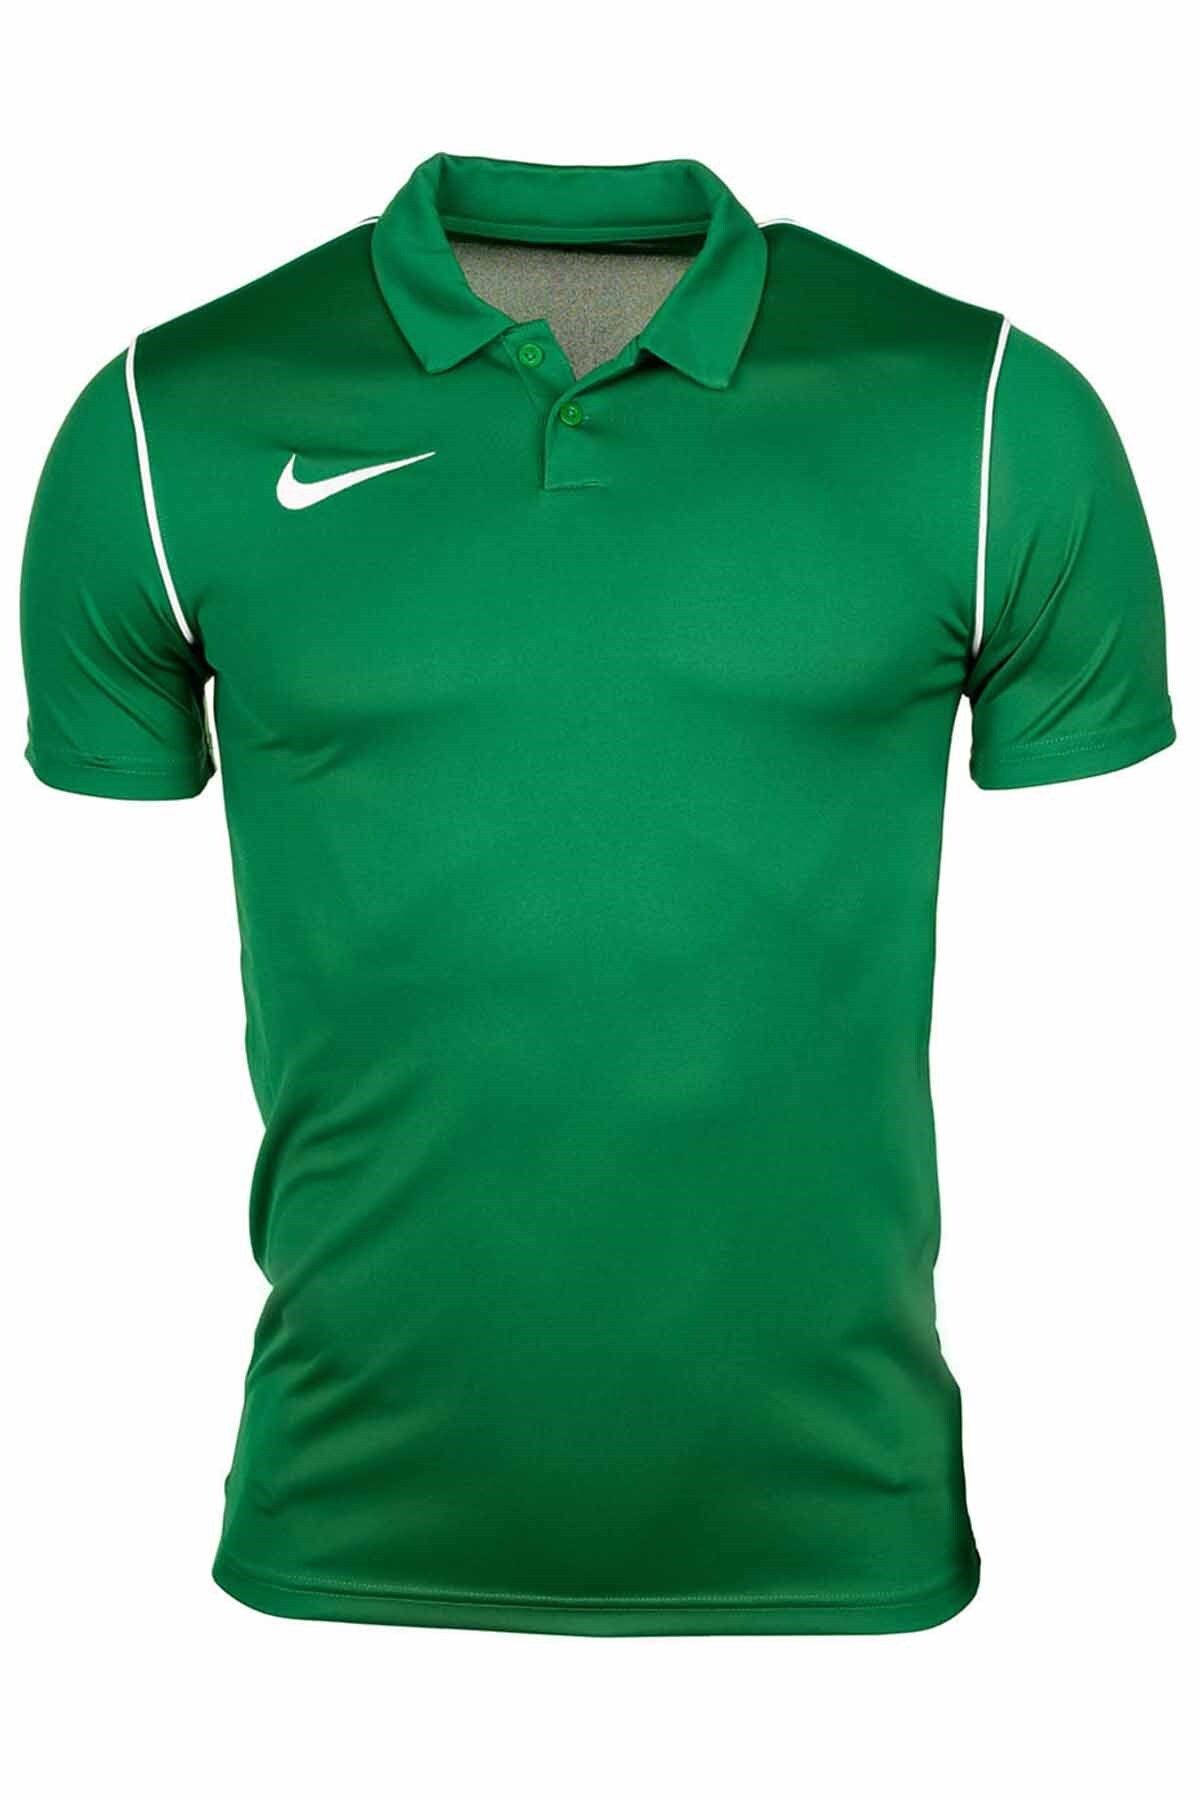 Nike B1 Tişört Park20 Erkek Polo Tişört Nk6879-302-yeşil